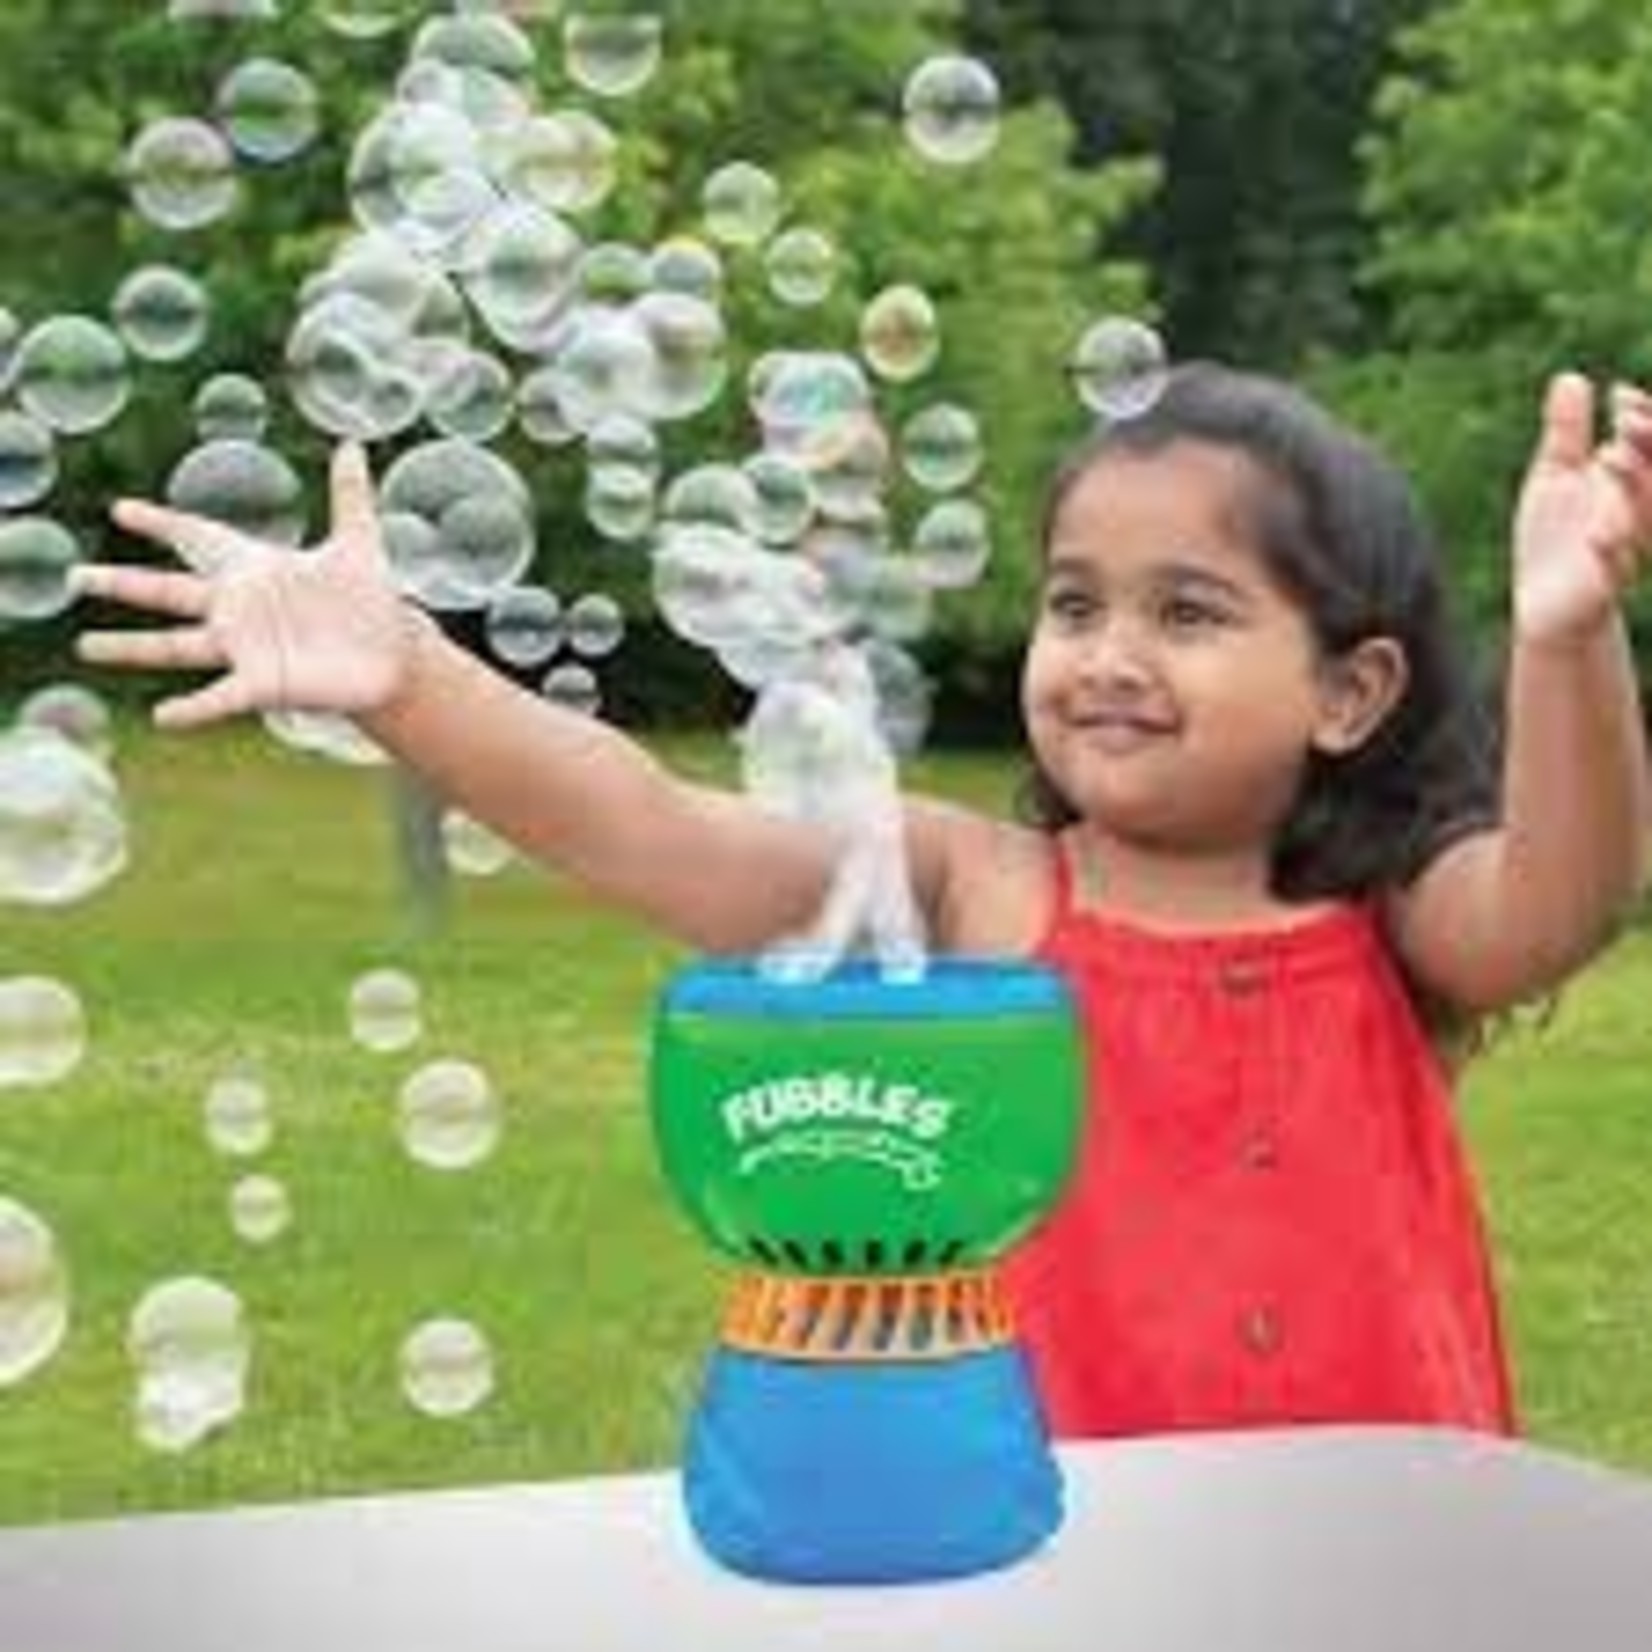 Little Kids Fubbles No-Spill Fun-Finiti Bubble Machine